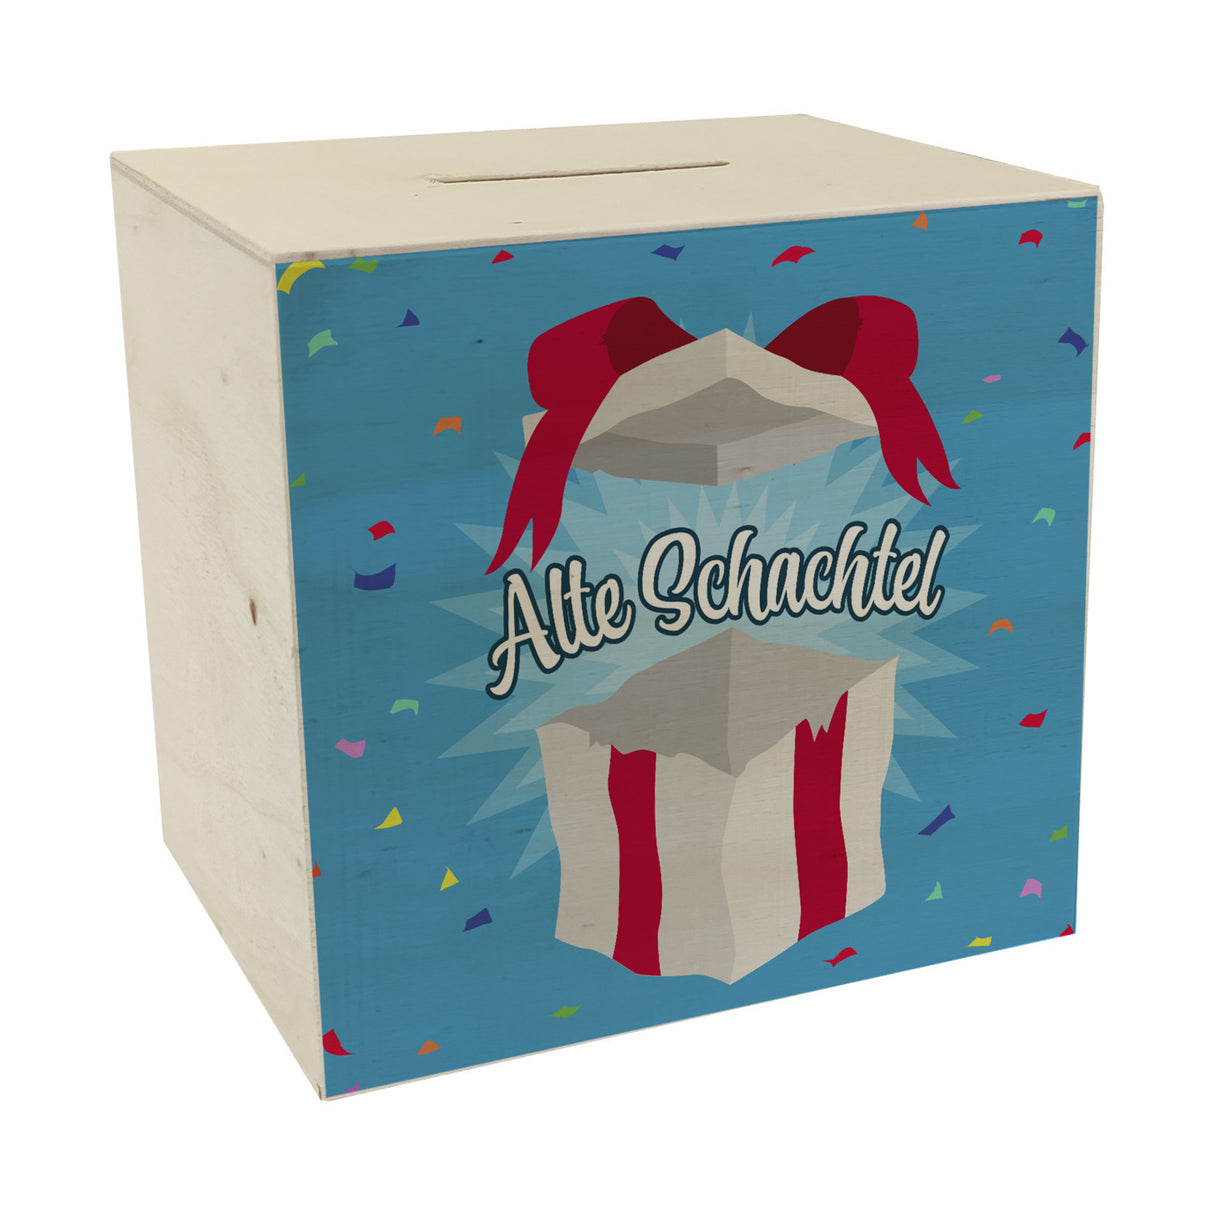 Alte Schachtel Spardose mit Geburtstagsgeschenk-Motiv